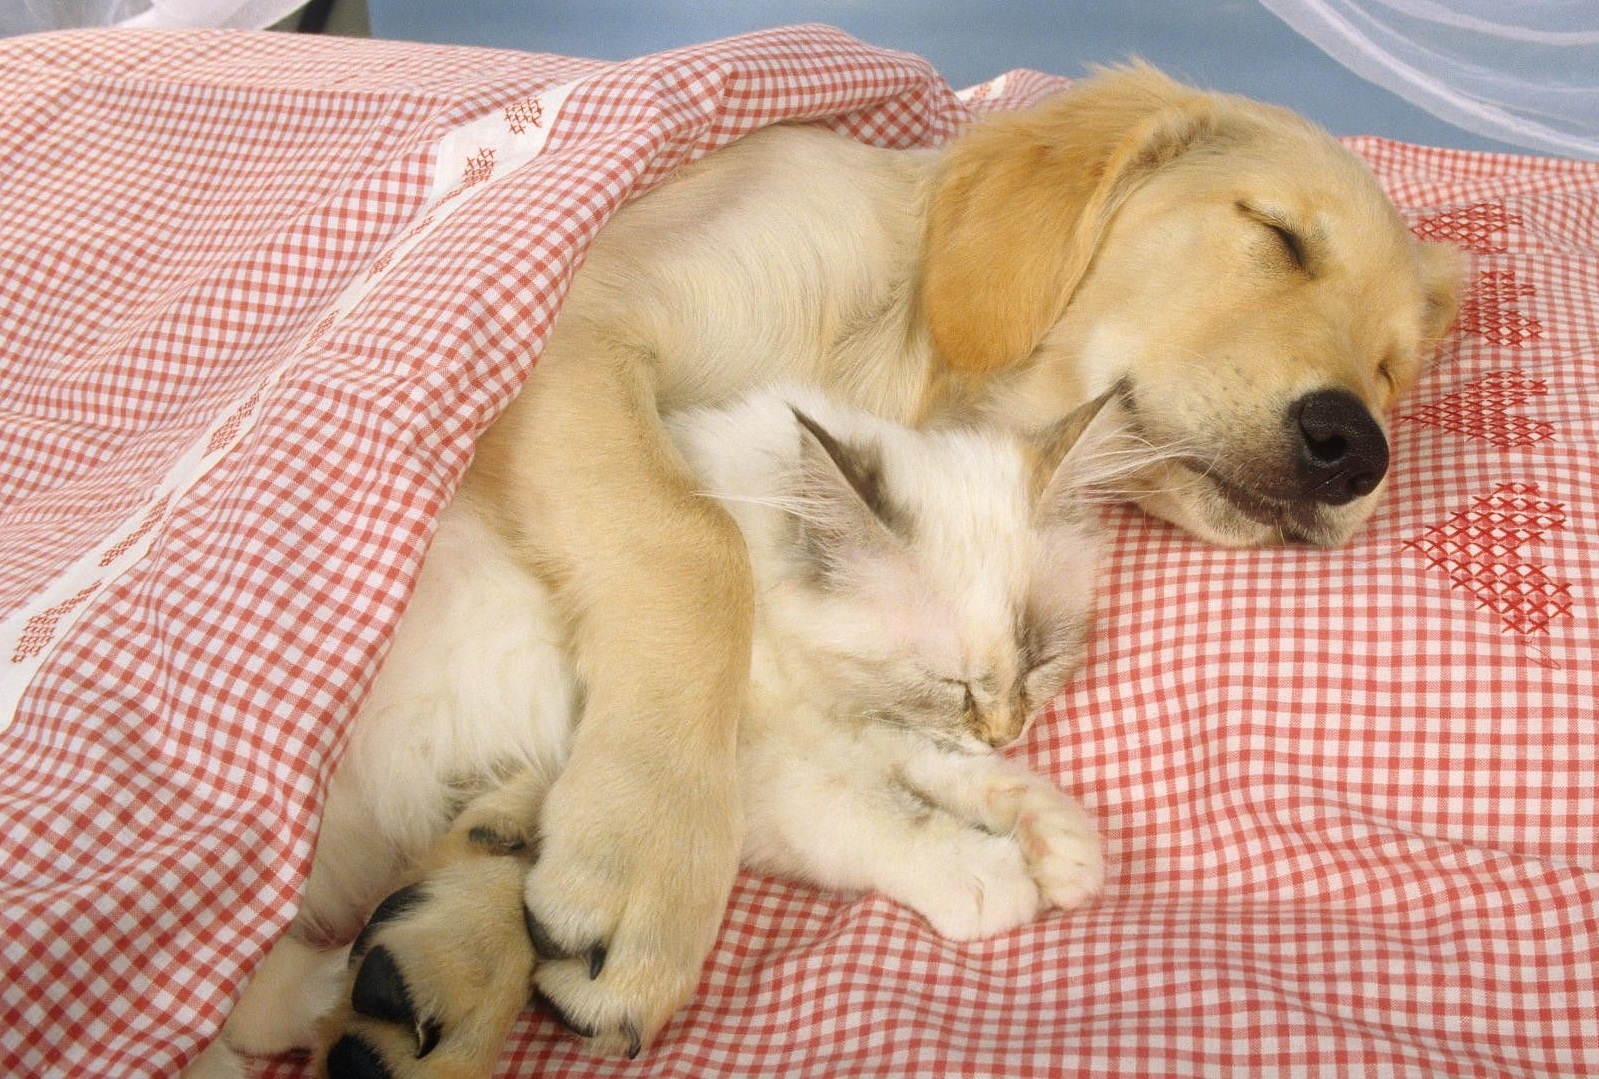 Gehören Hund und Katze mit ins Bett?